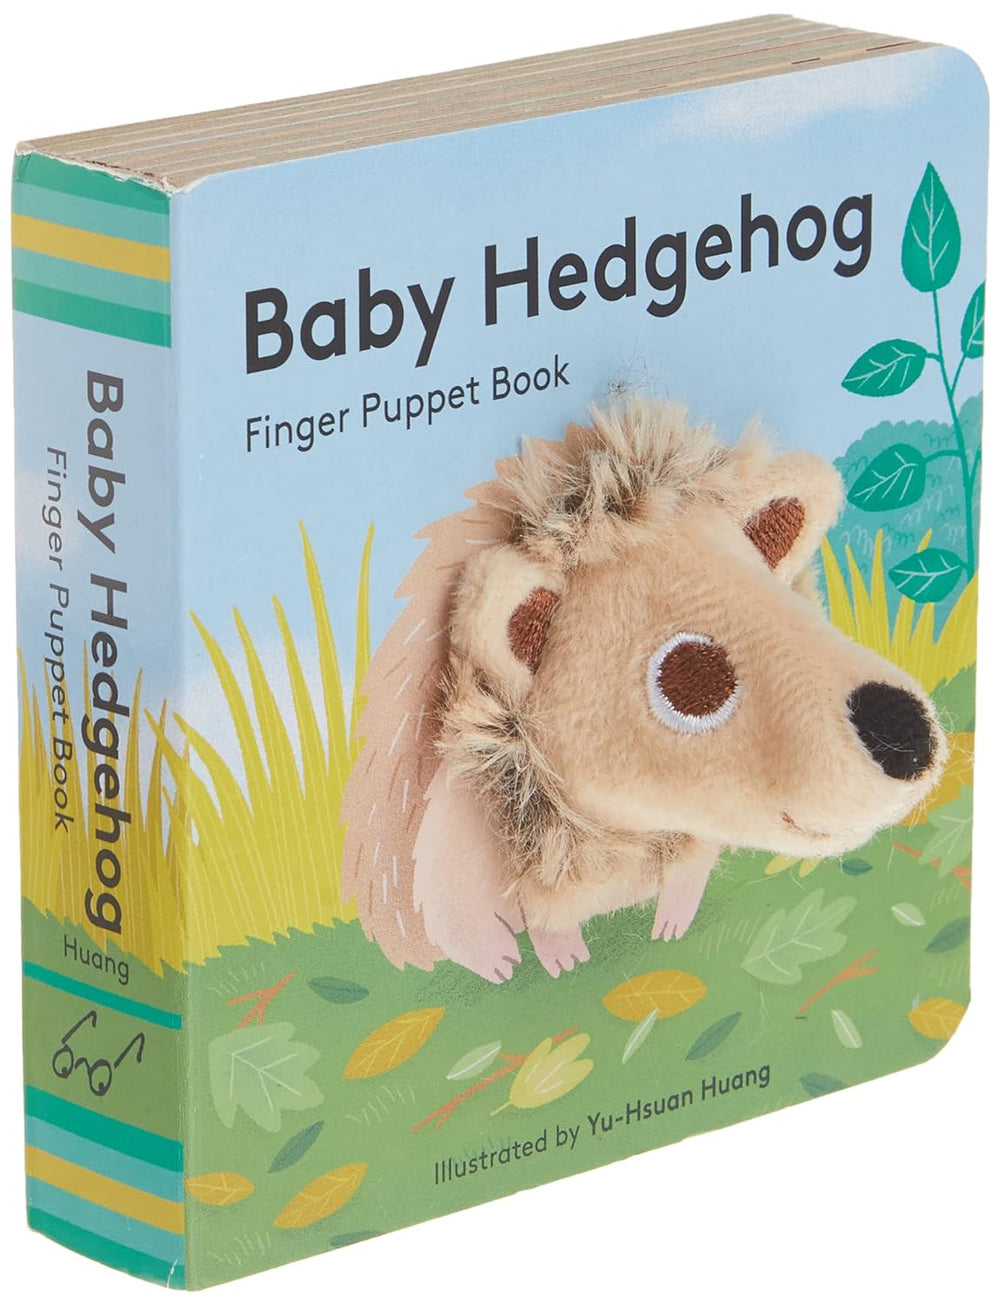 Baby Hedgehog - Finger Puppet Book